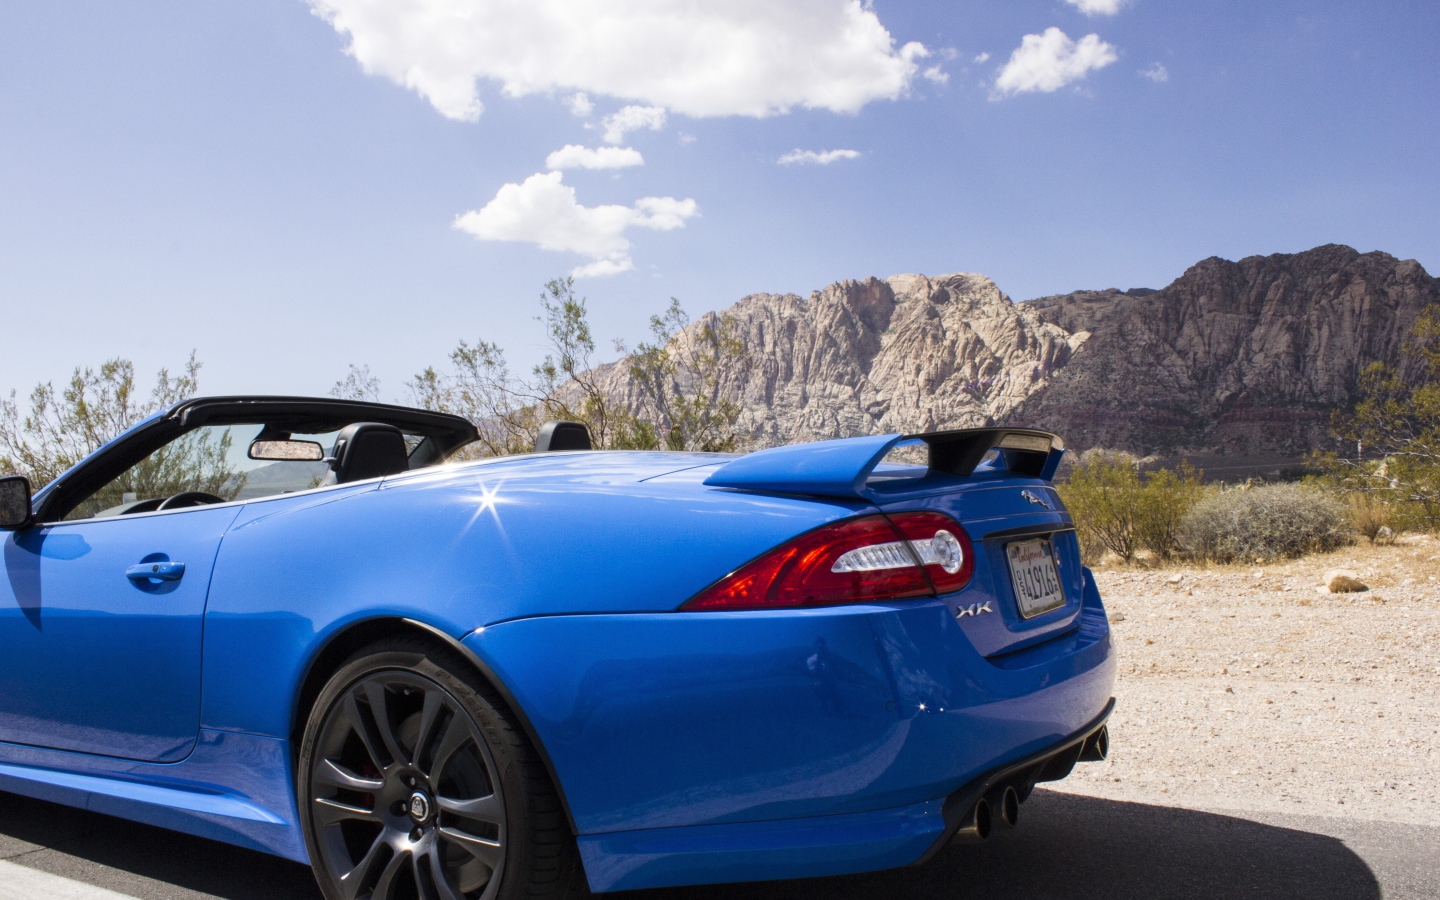 Голубой кабриолет Jaguar на фоне гор